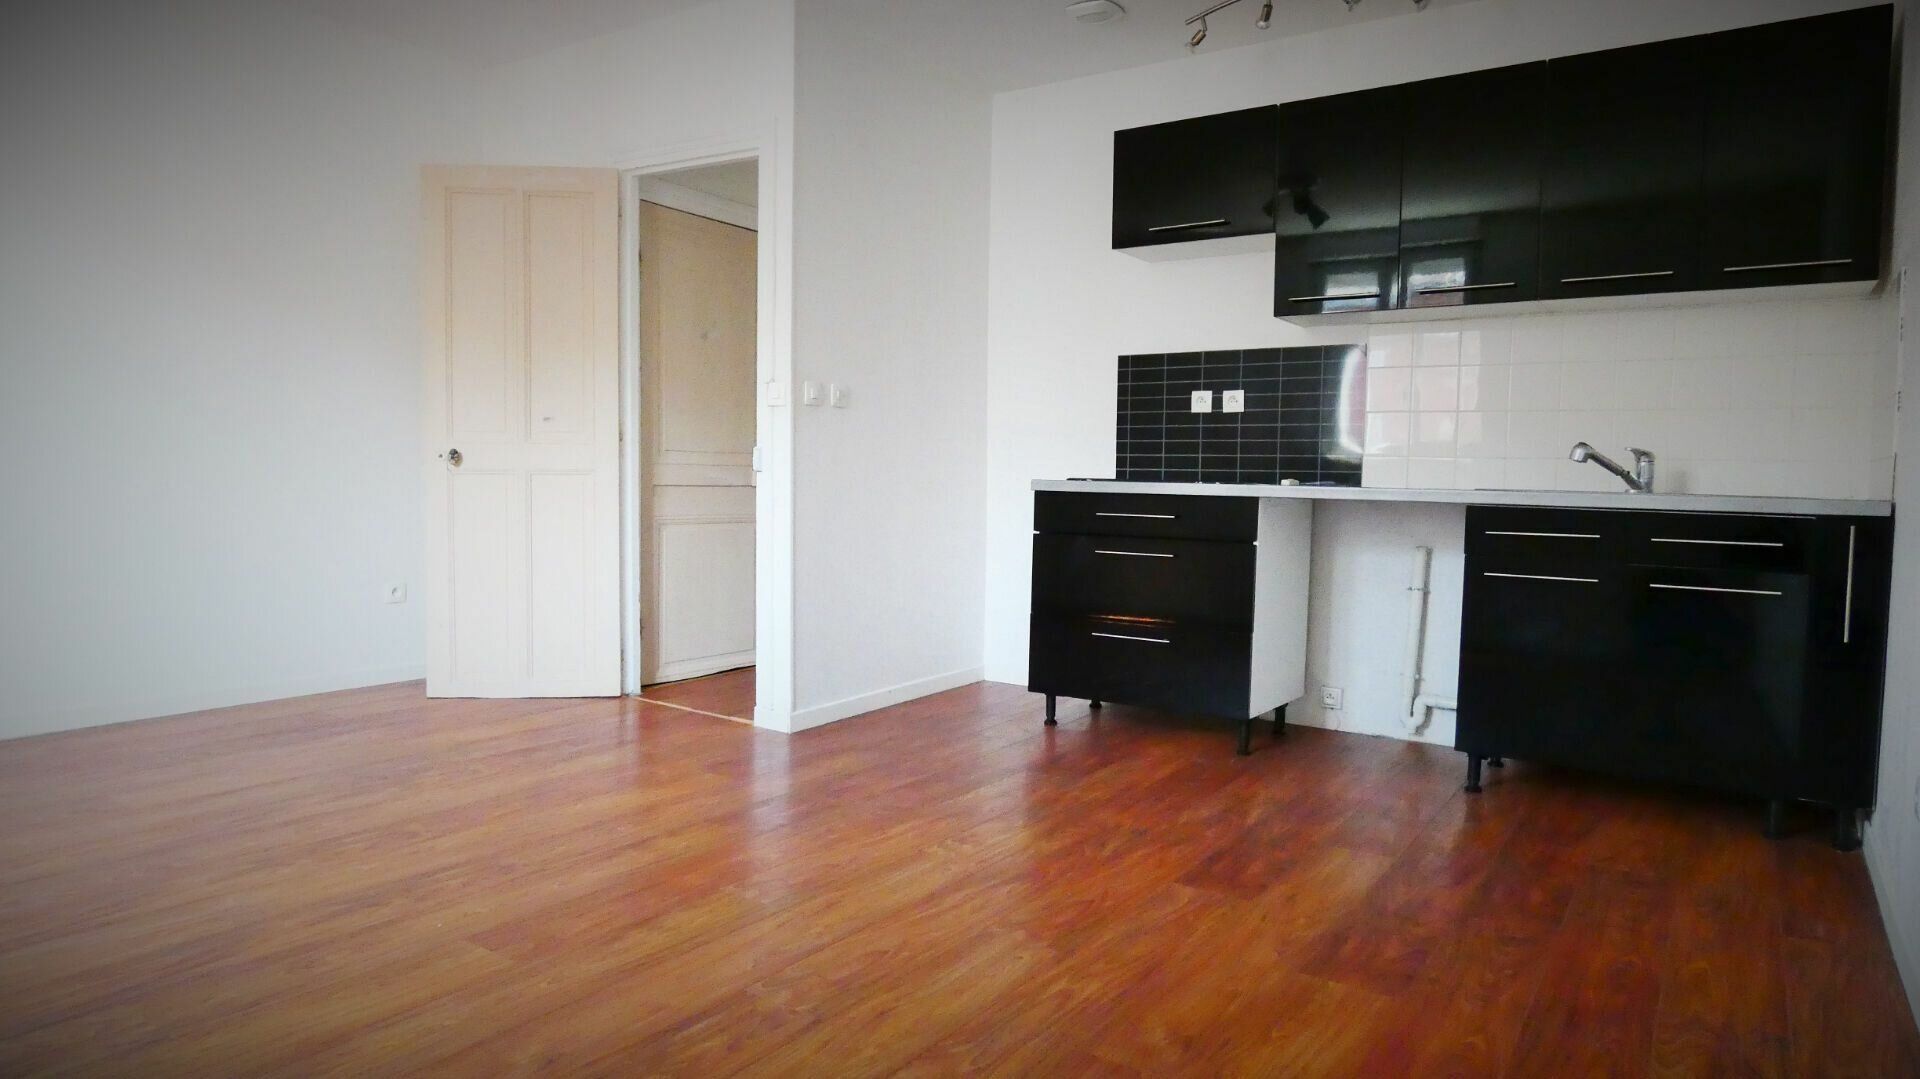 Appartement à louer 3 44.61m2 à Chauny vignette-2